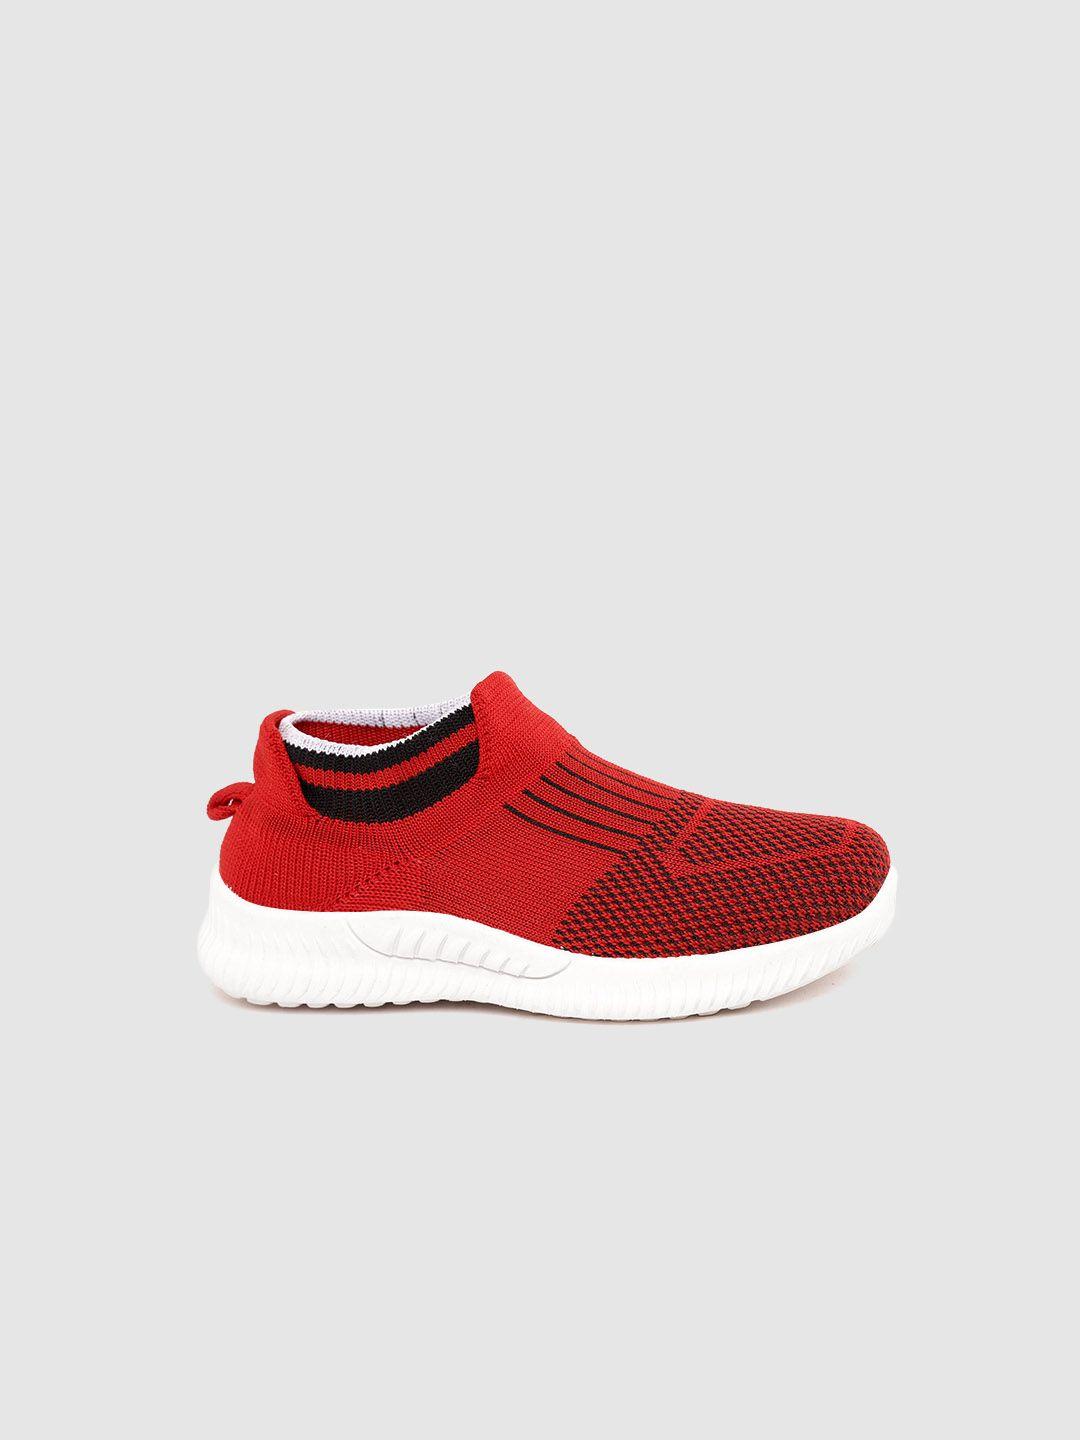 yk boys red & black woven design slip-on sneakers